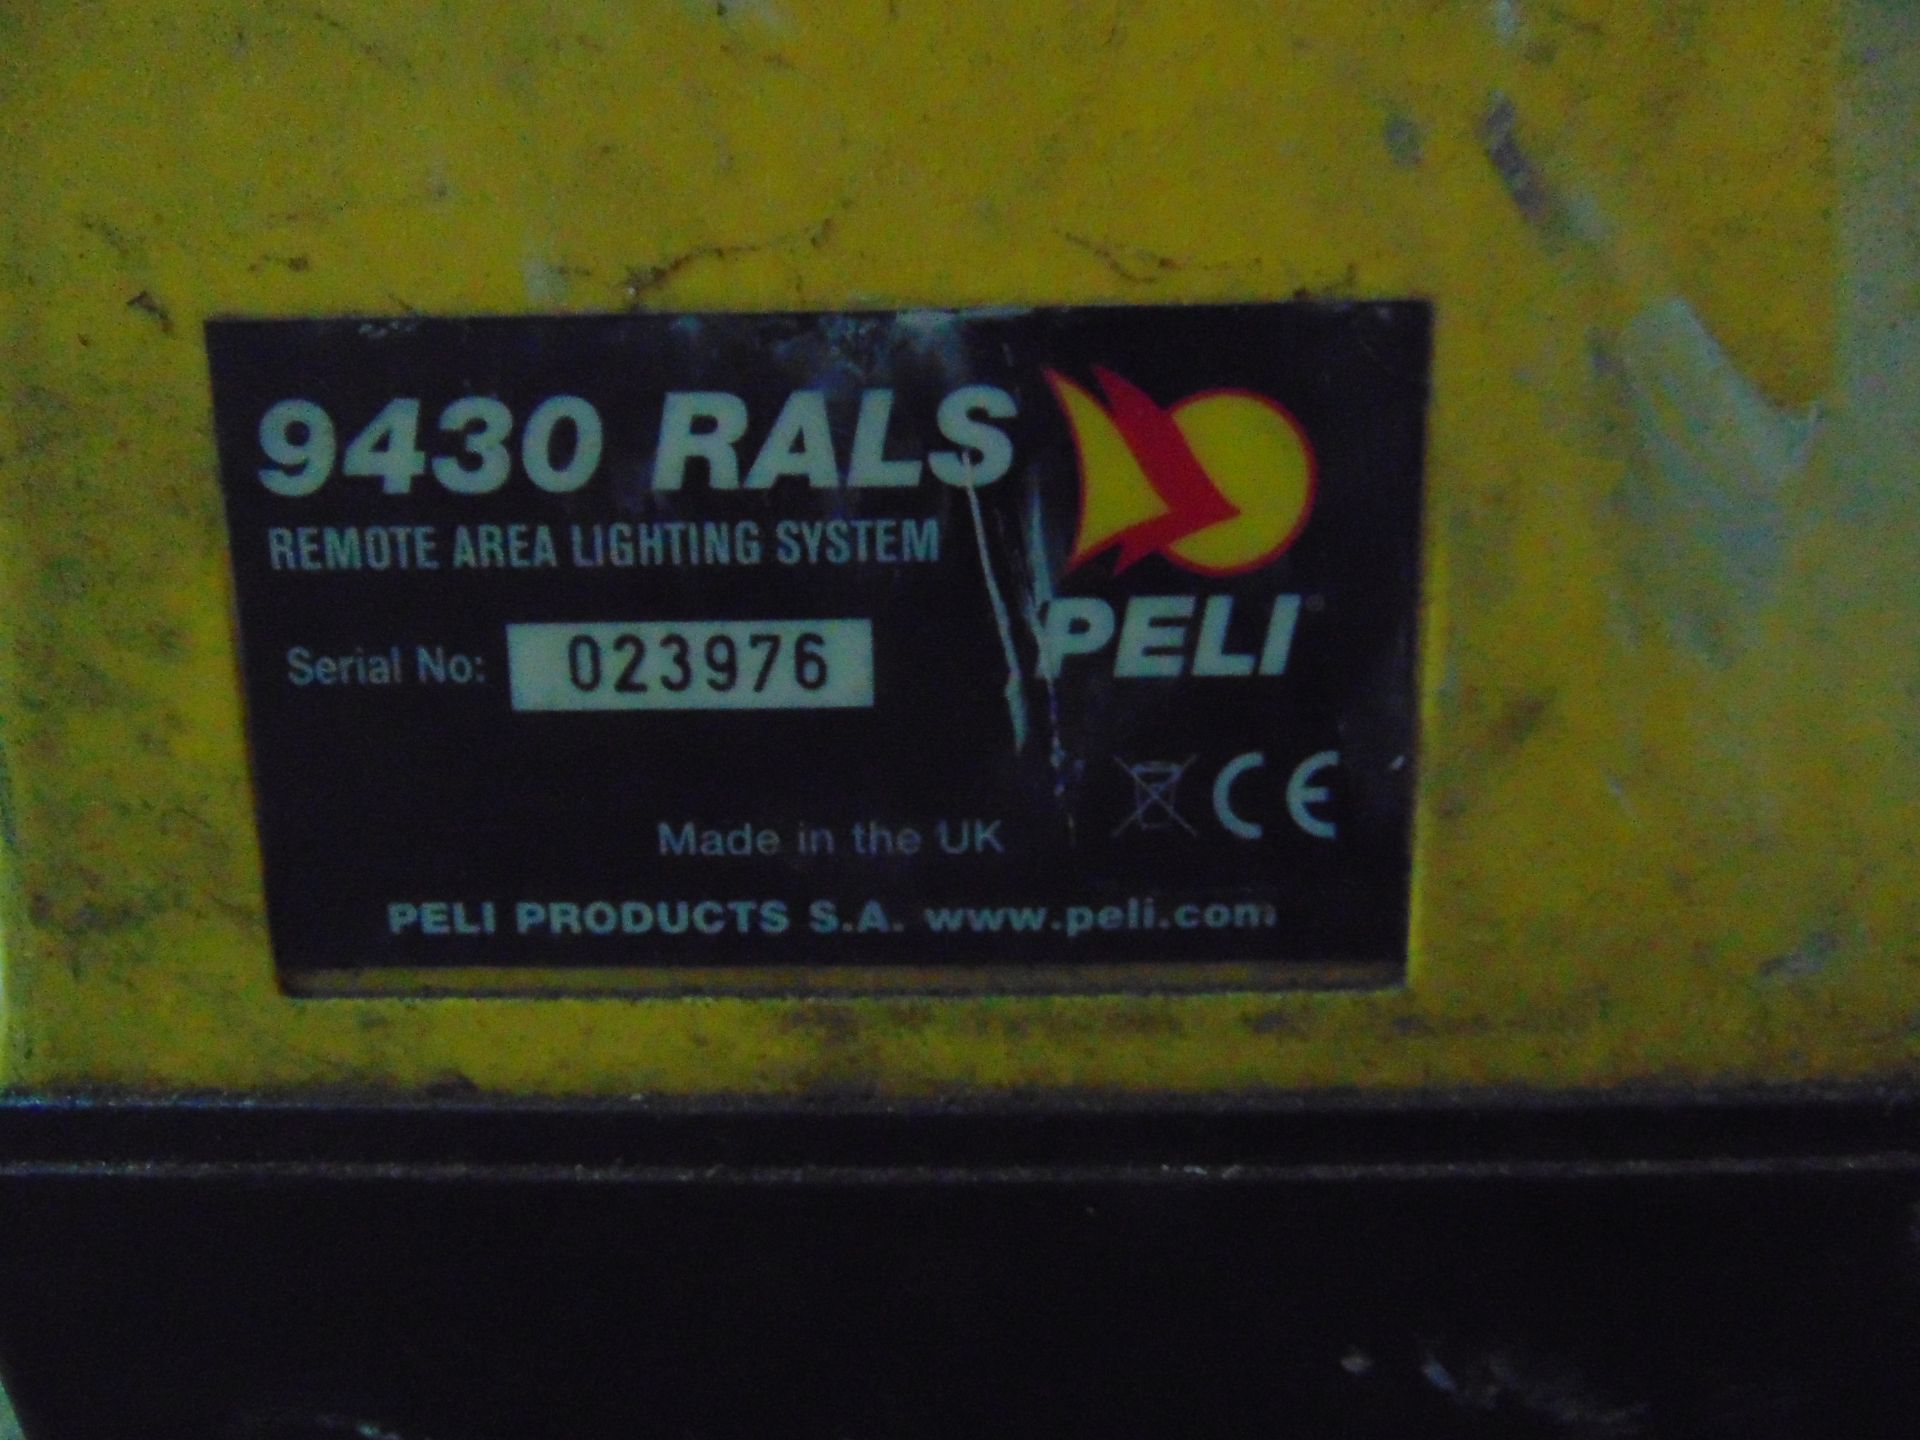 2 x Peli 9430 RALS LED Area Work Lights - Image 3 of 4